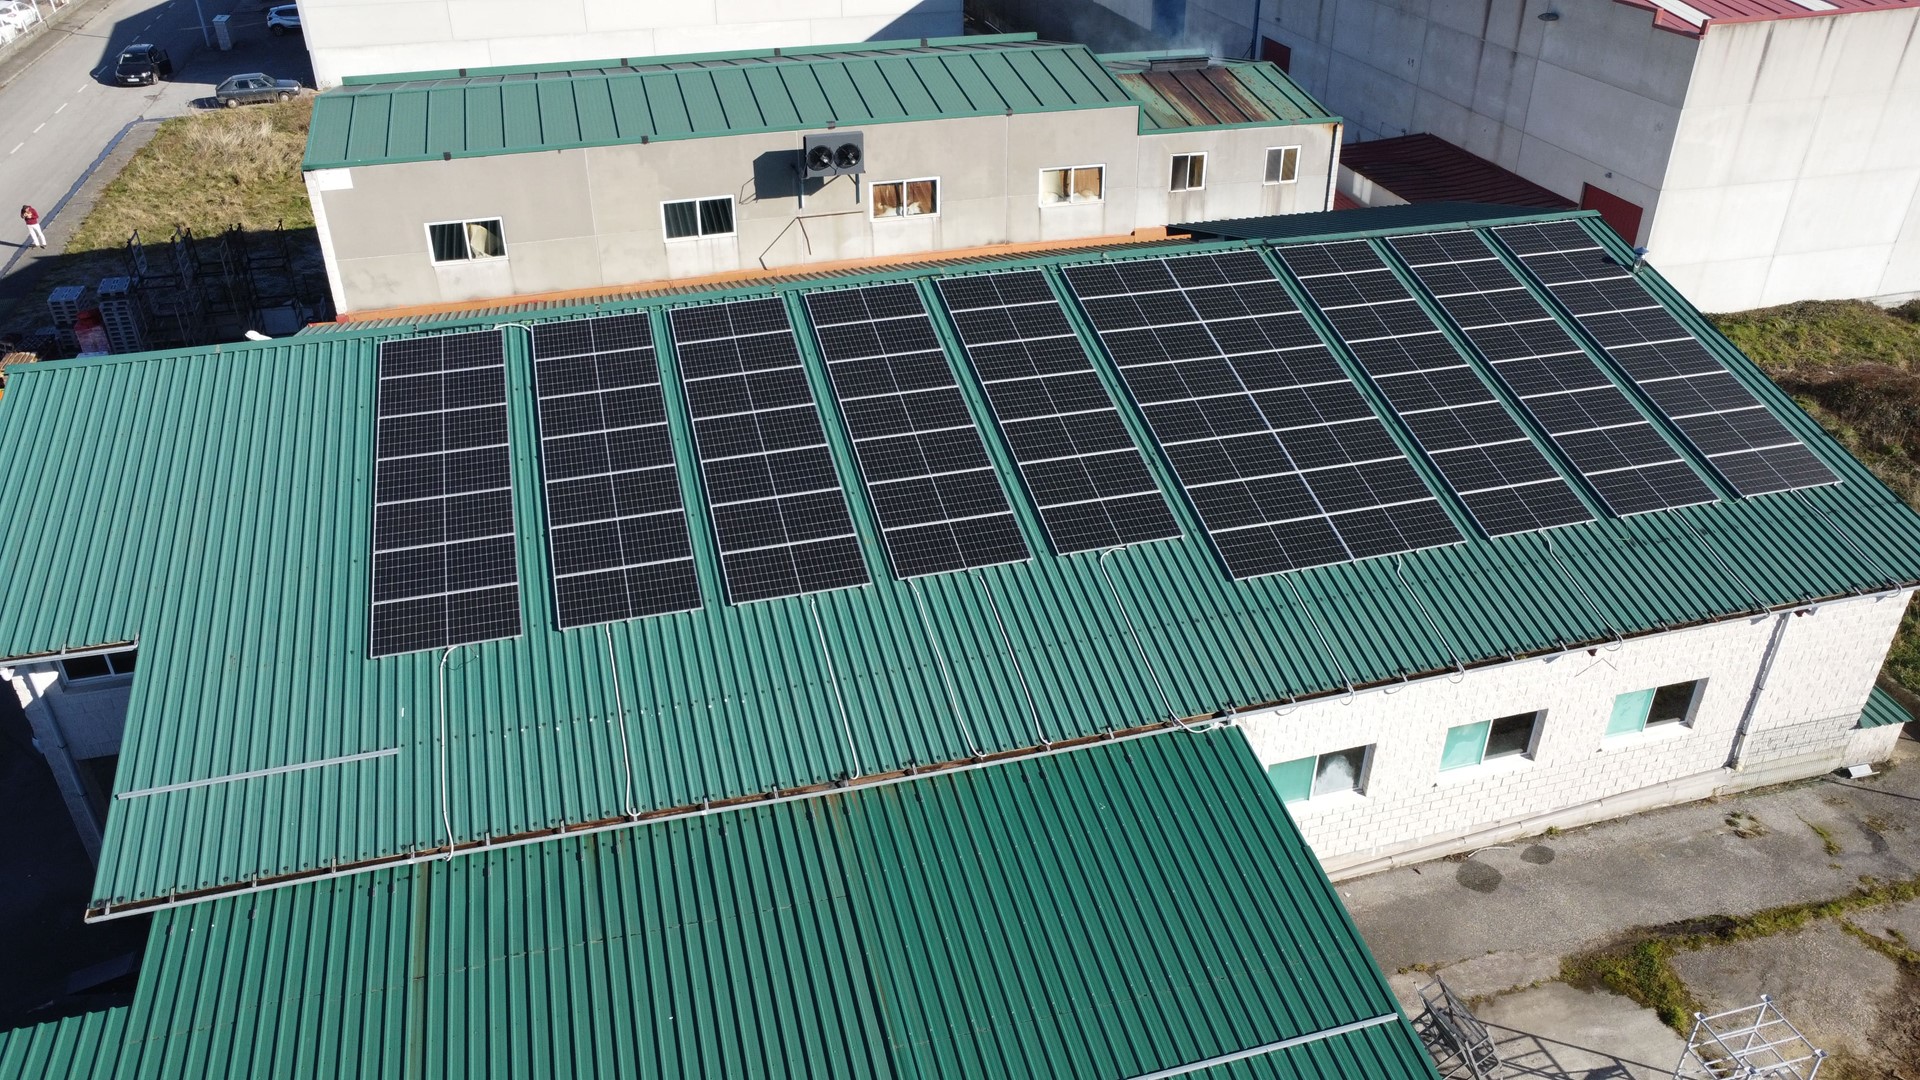 Instalación fotovoltaica de 40.5 kWp en Tineo, Asturias